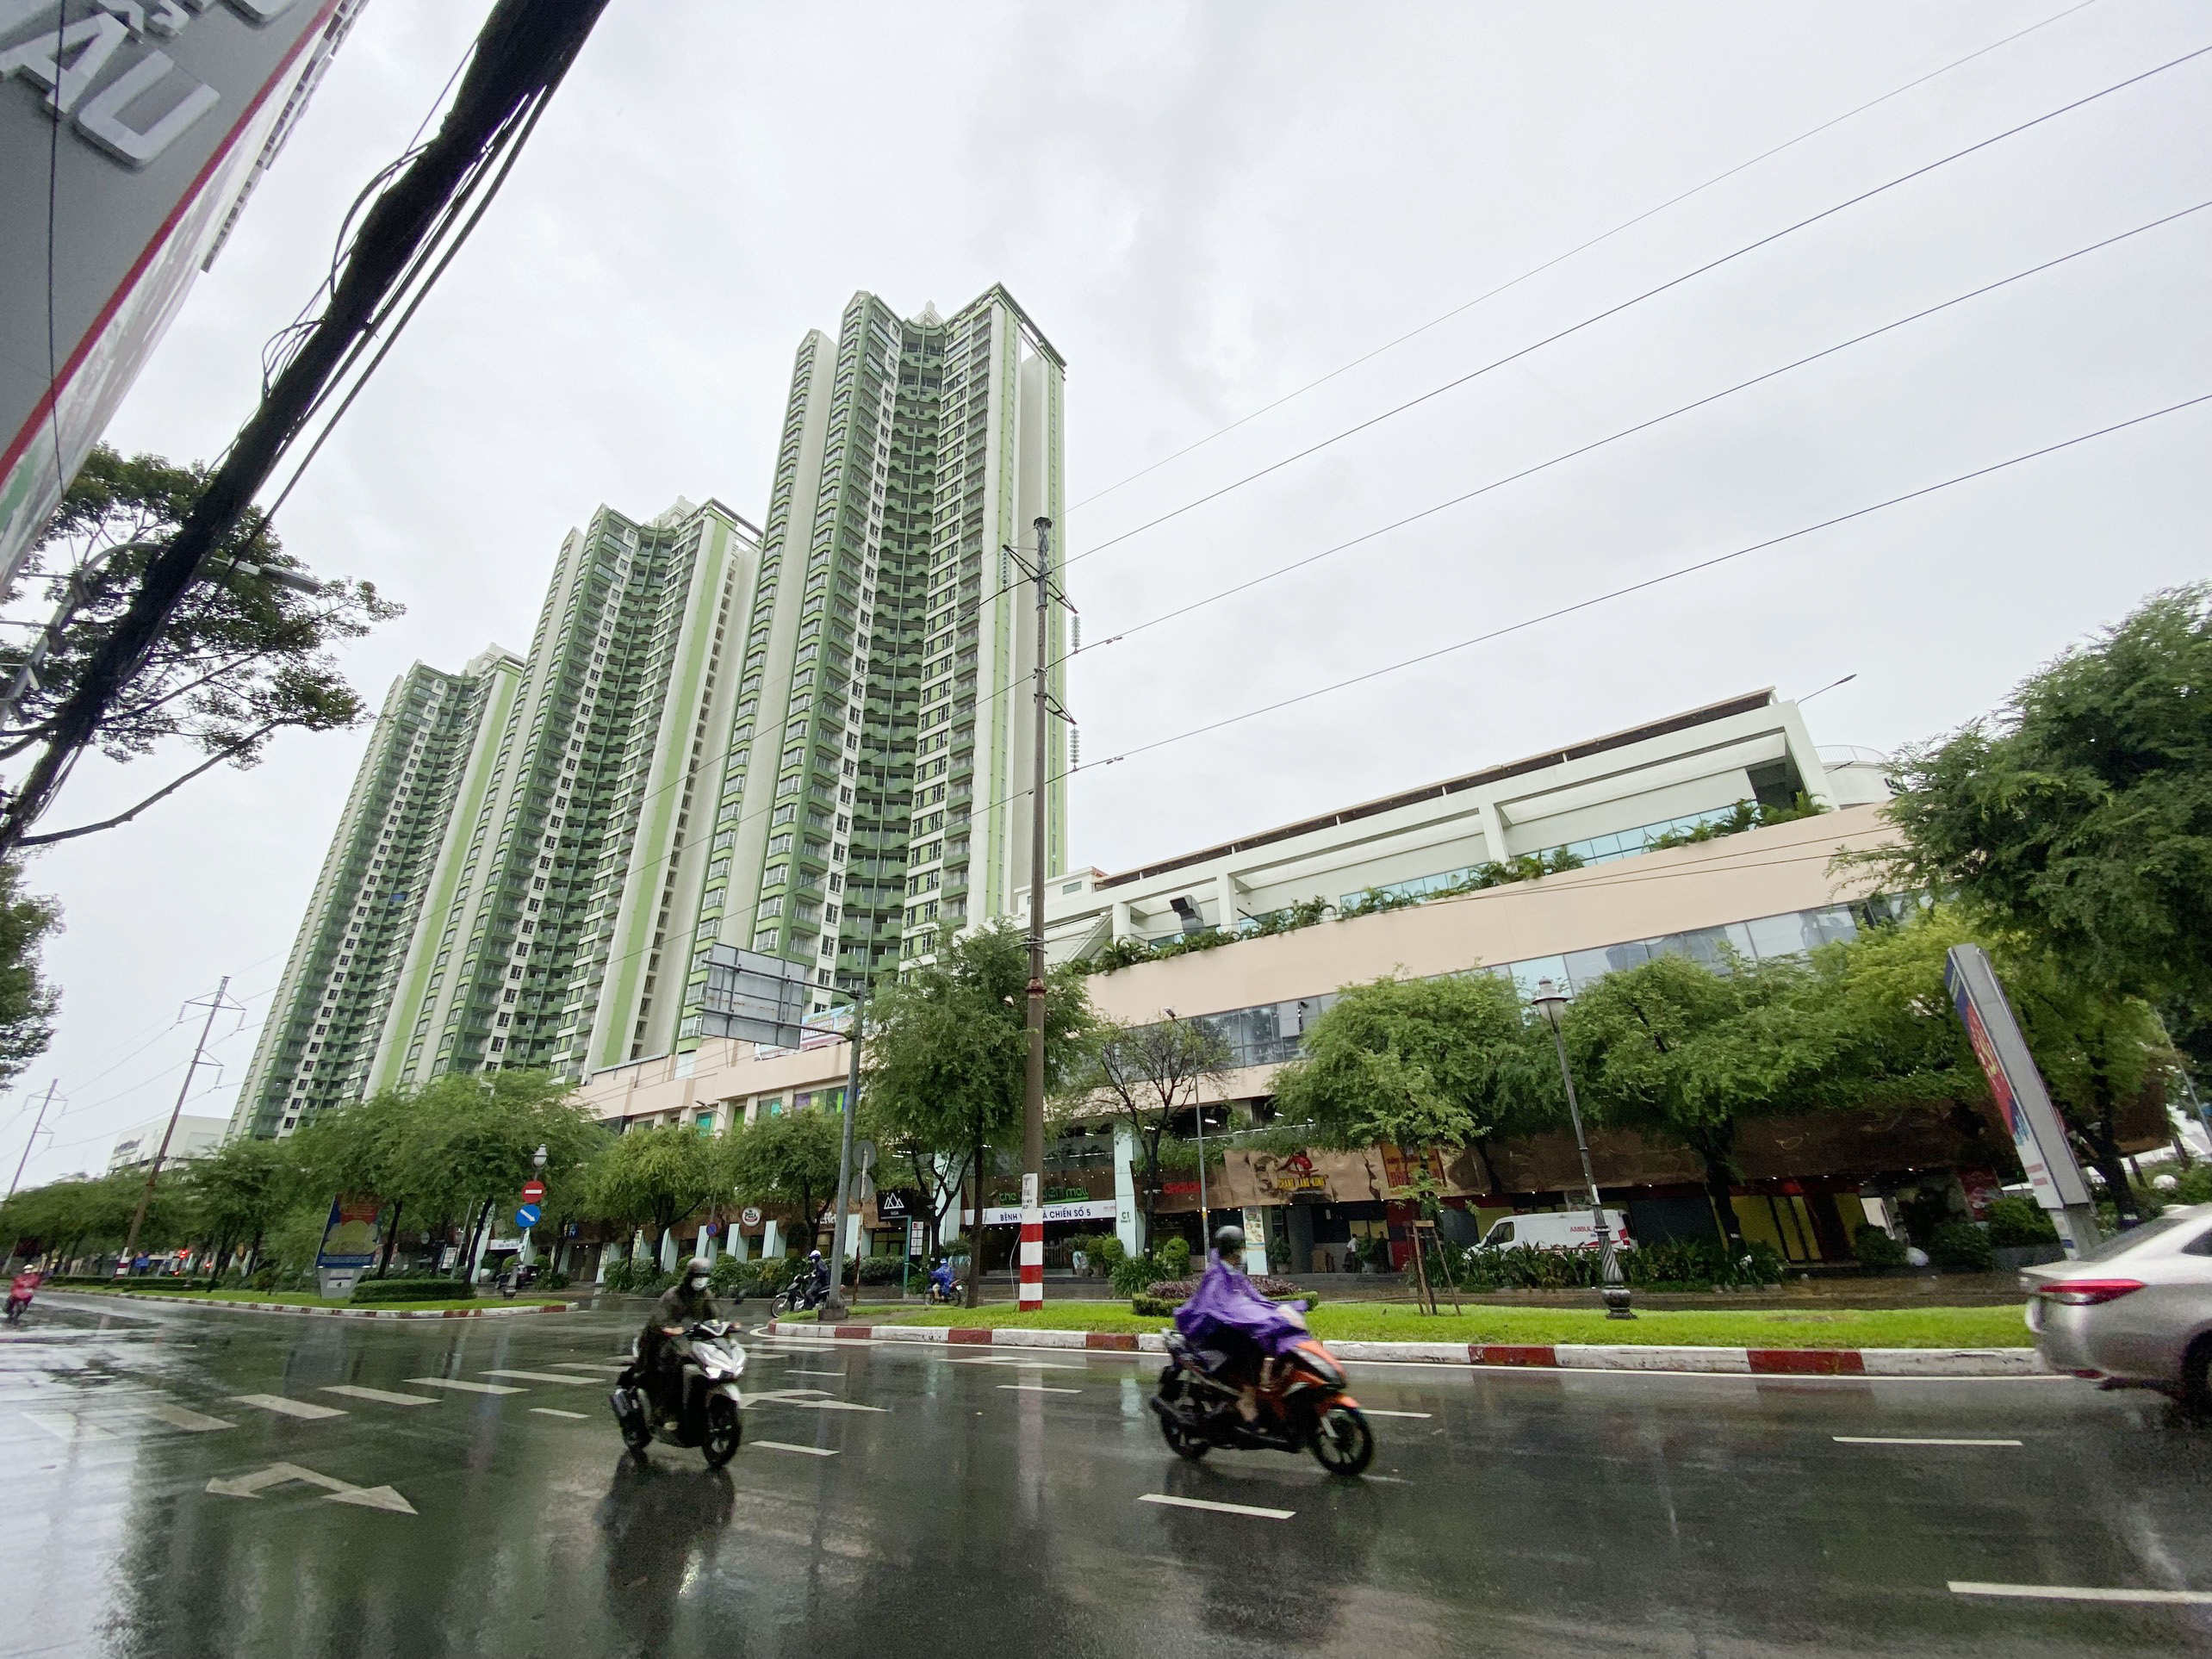 Bệnh viện Dã chiến thu dung số 5 điều trị COVID-19 tại tòa nhà The Garden Mall (Thuận Kiều Plaza cũ) nằm trên đường Hồng Bàng, quận 5, TP.HCM.